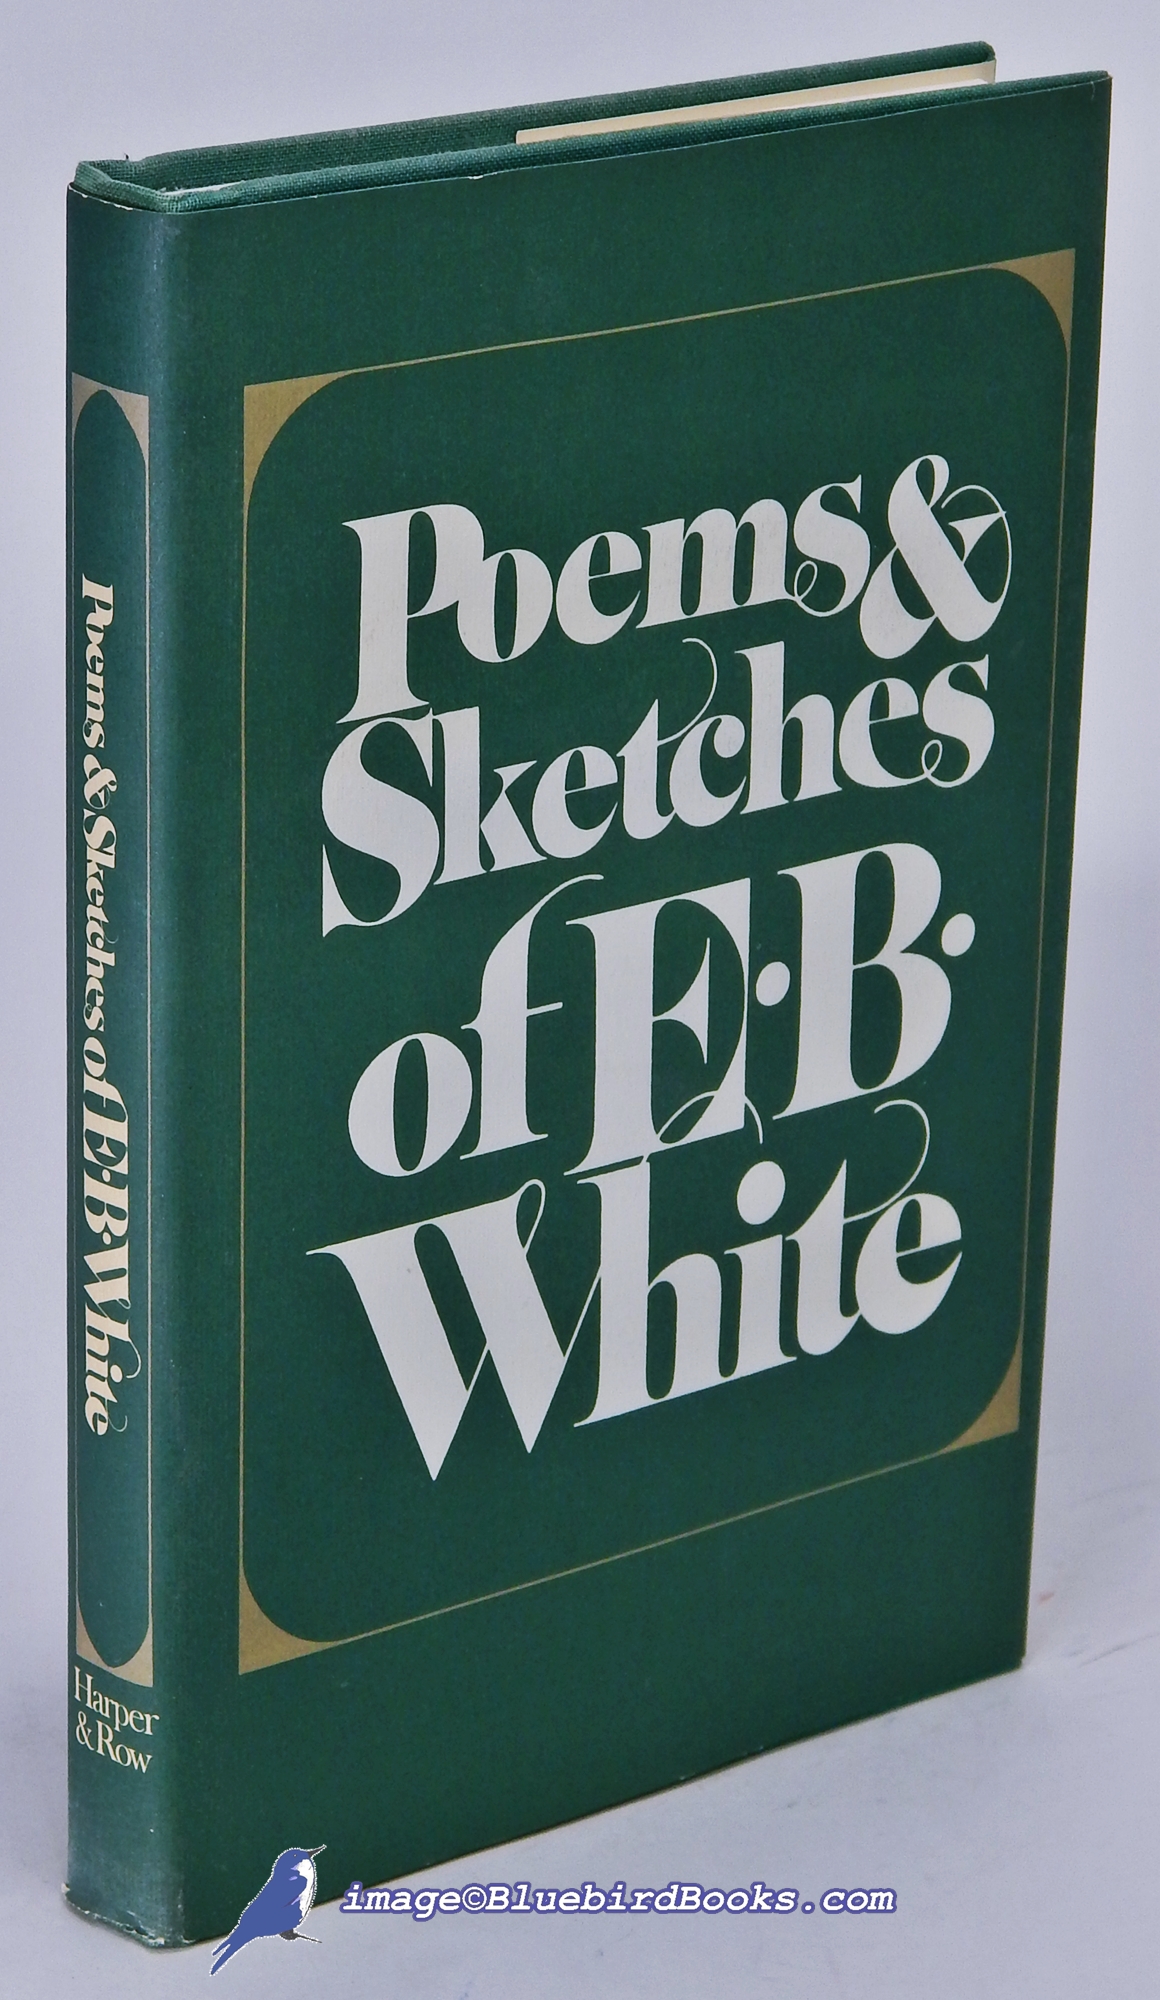 WHITE, E. B. - Poems and Sketches of E.B. White